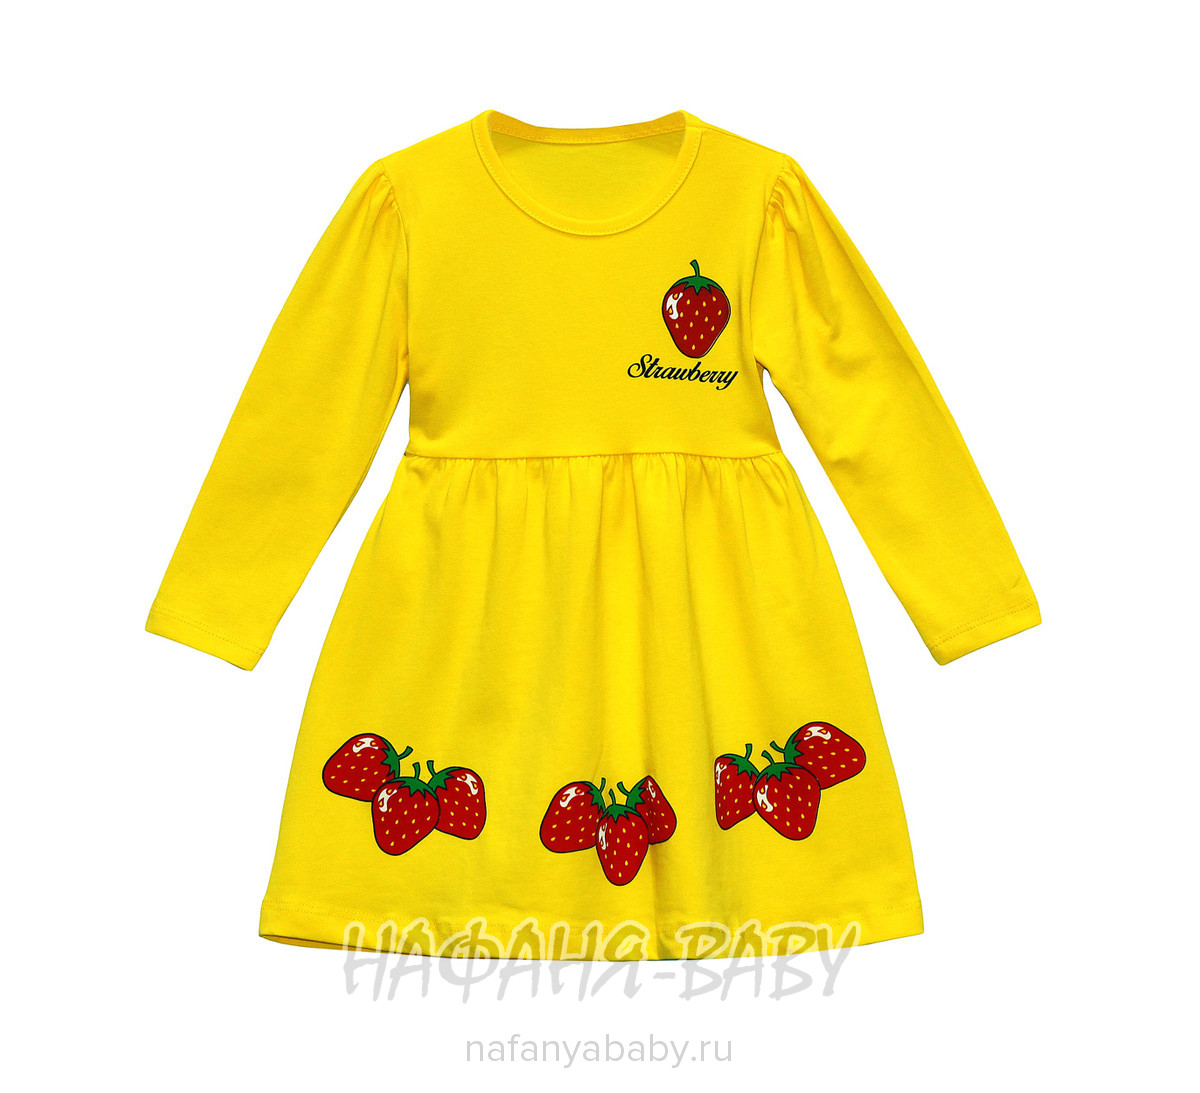 Детское трикотажное платье Cit Cit арт: 7089, 1-4 года, 0-12 мес, оптом Турция